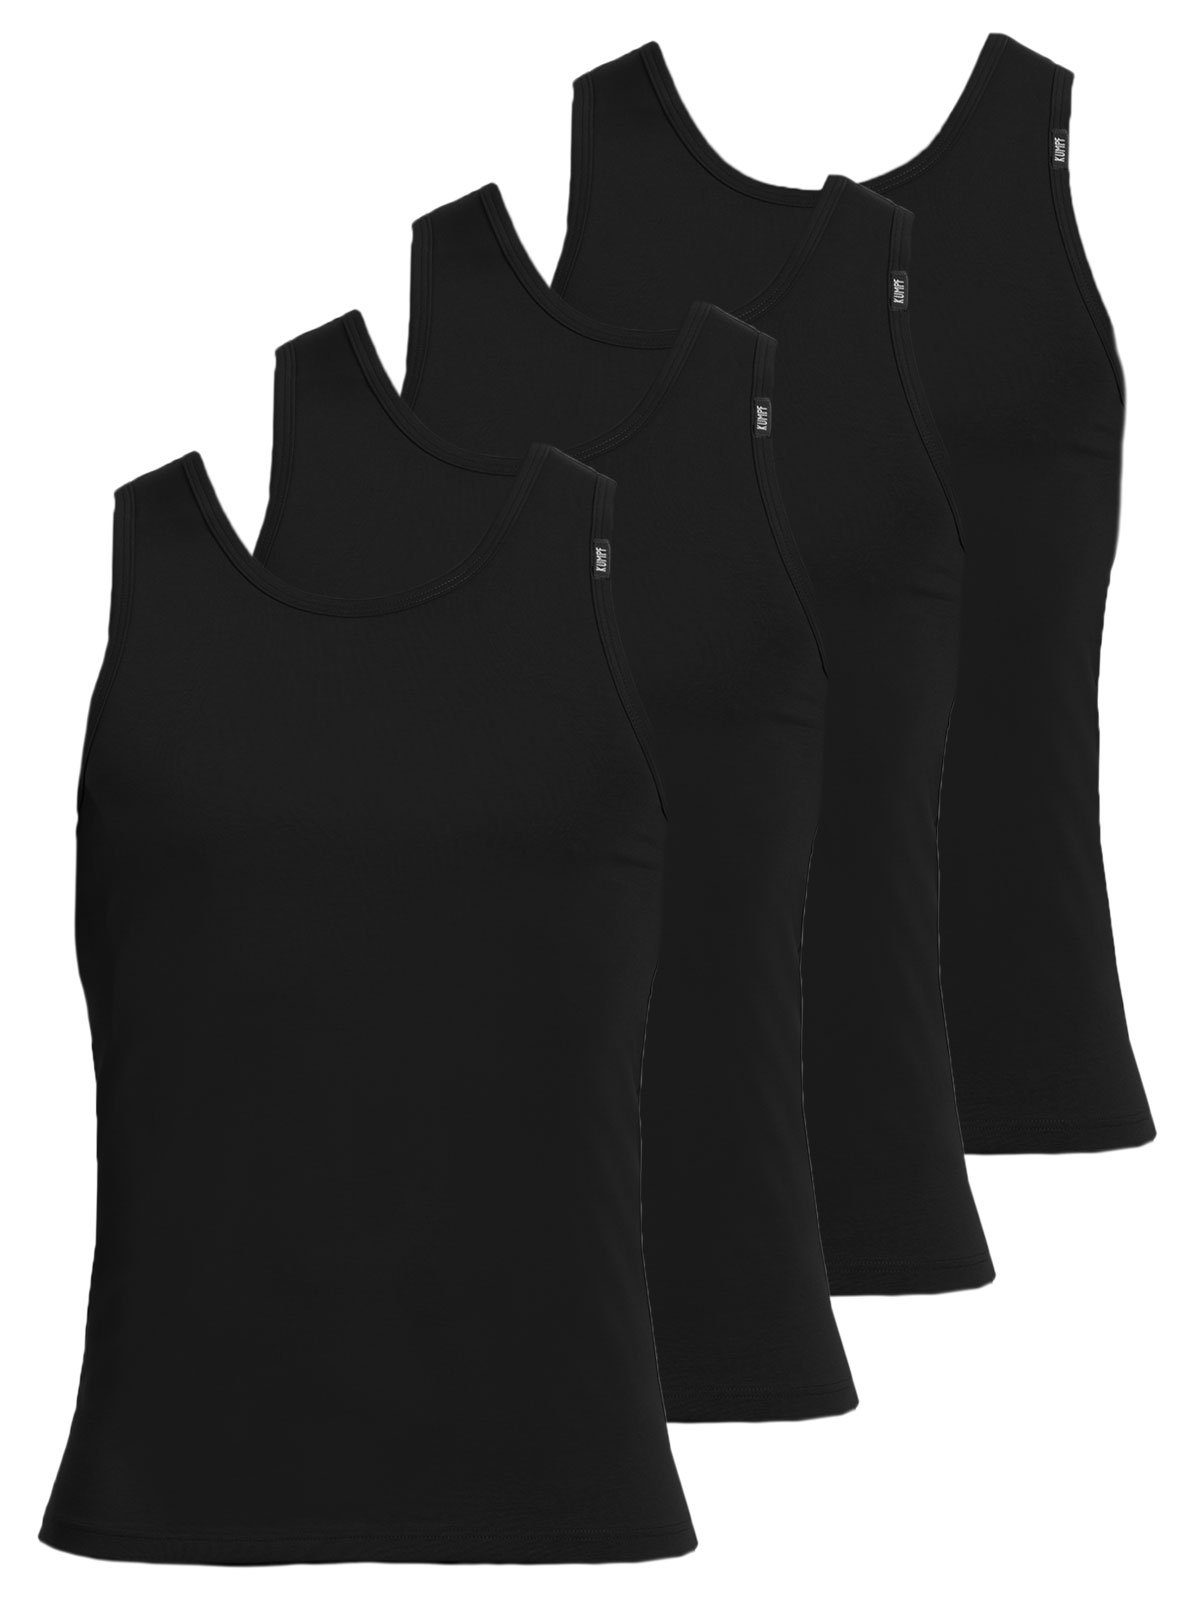 KUMPF Achselhemd 4er Sparpack Herren Unterhemd 4-St) schwarz (Spar-Set, hohe Markenqualität Cotton Bio